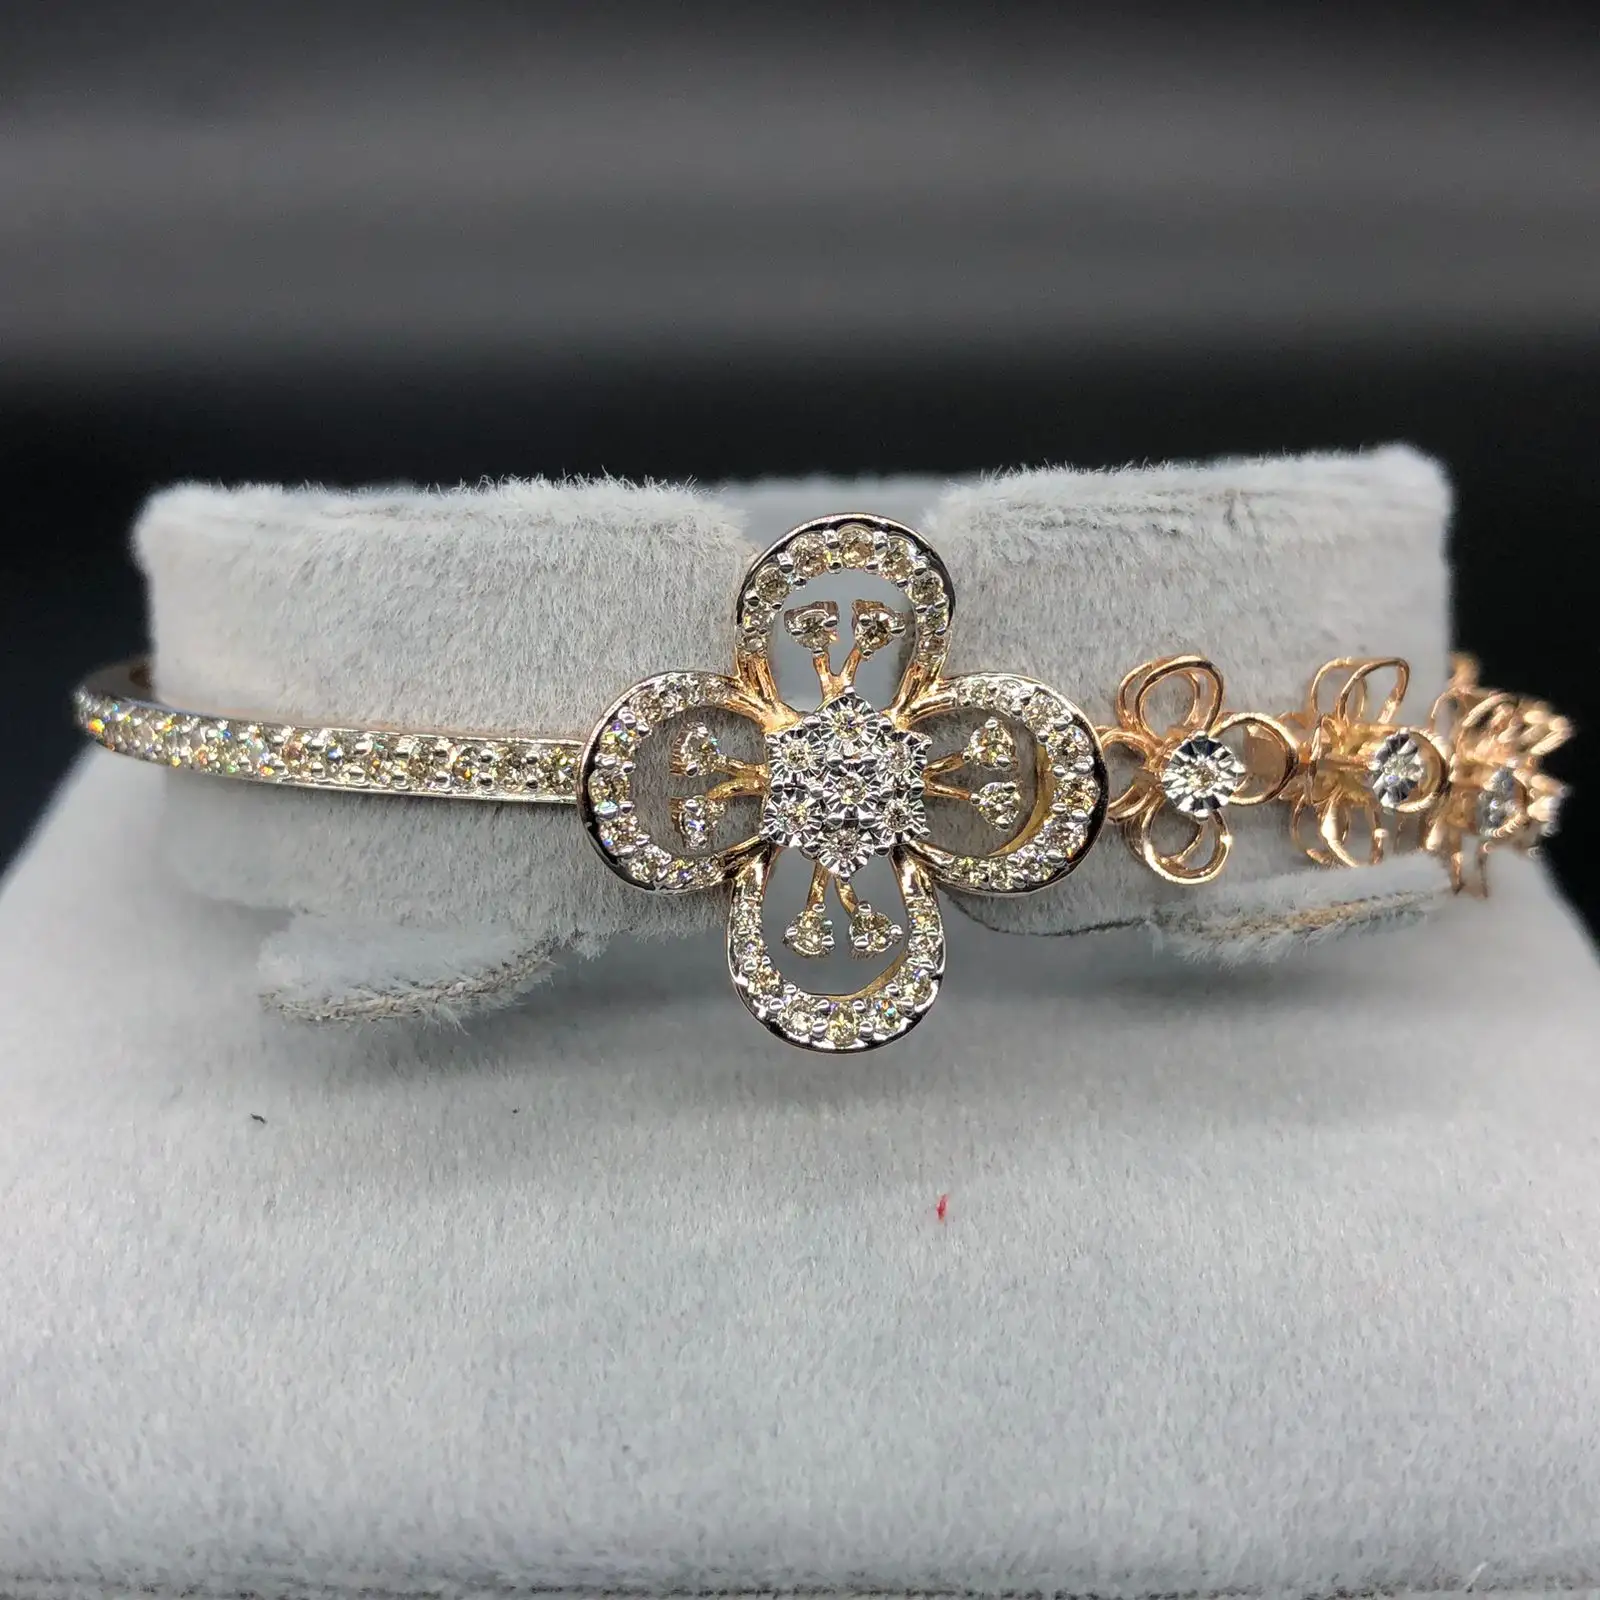 Ini adalah gelang emas indah dengan desain berbentuk bunga gelang ini terbuat dari rantai emas tipis dengan berlian kecil